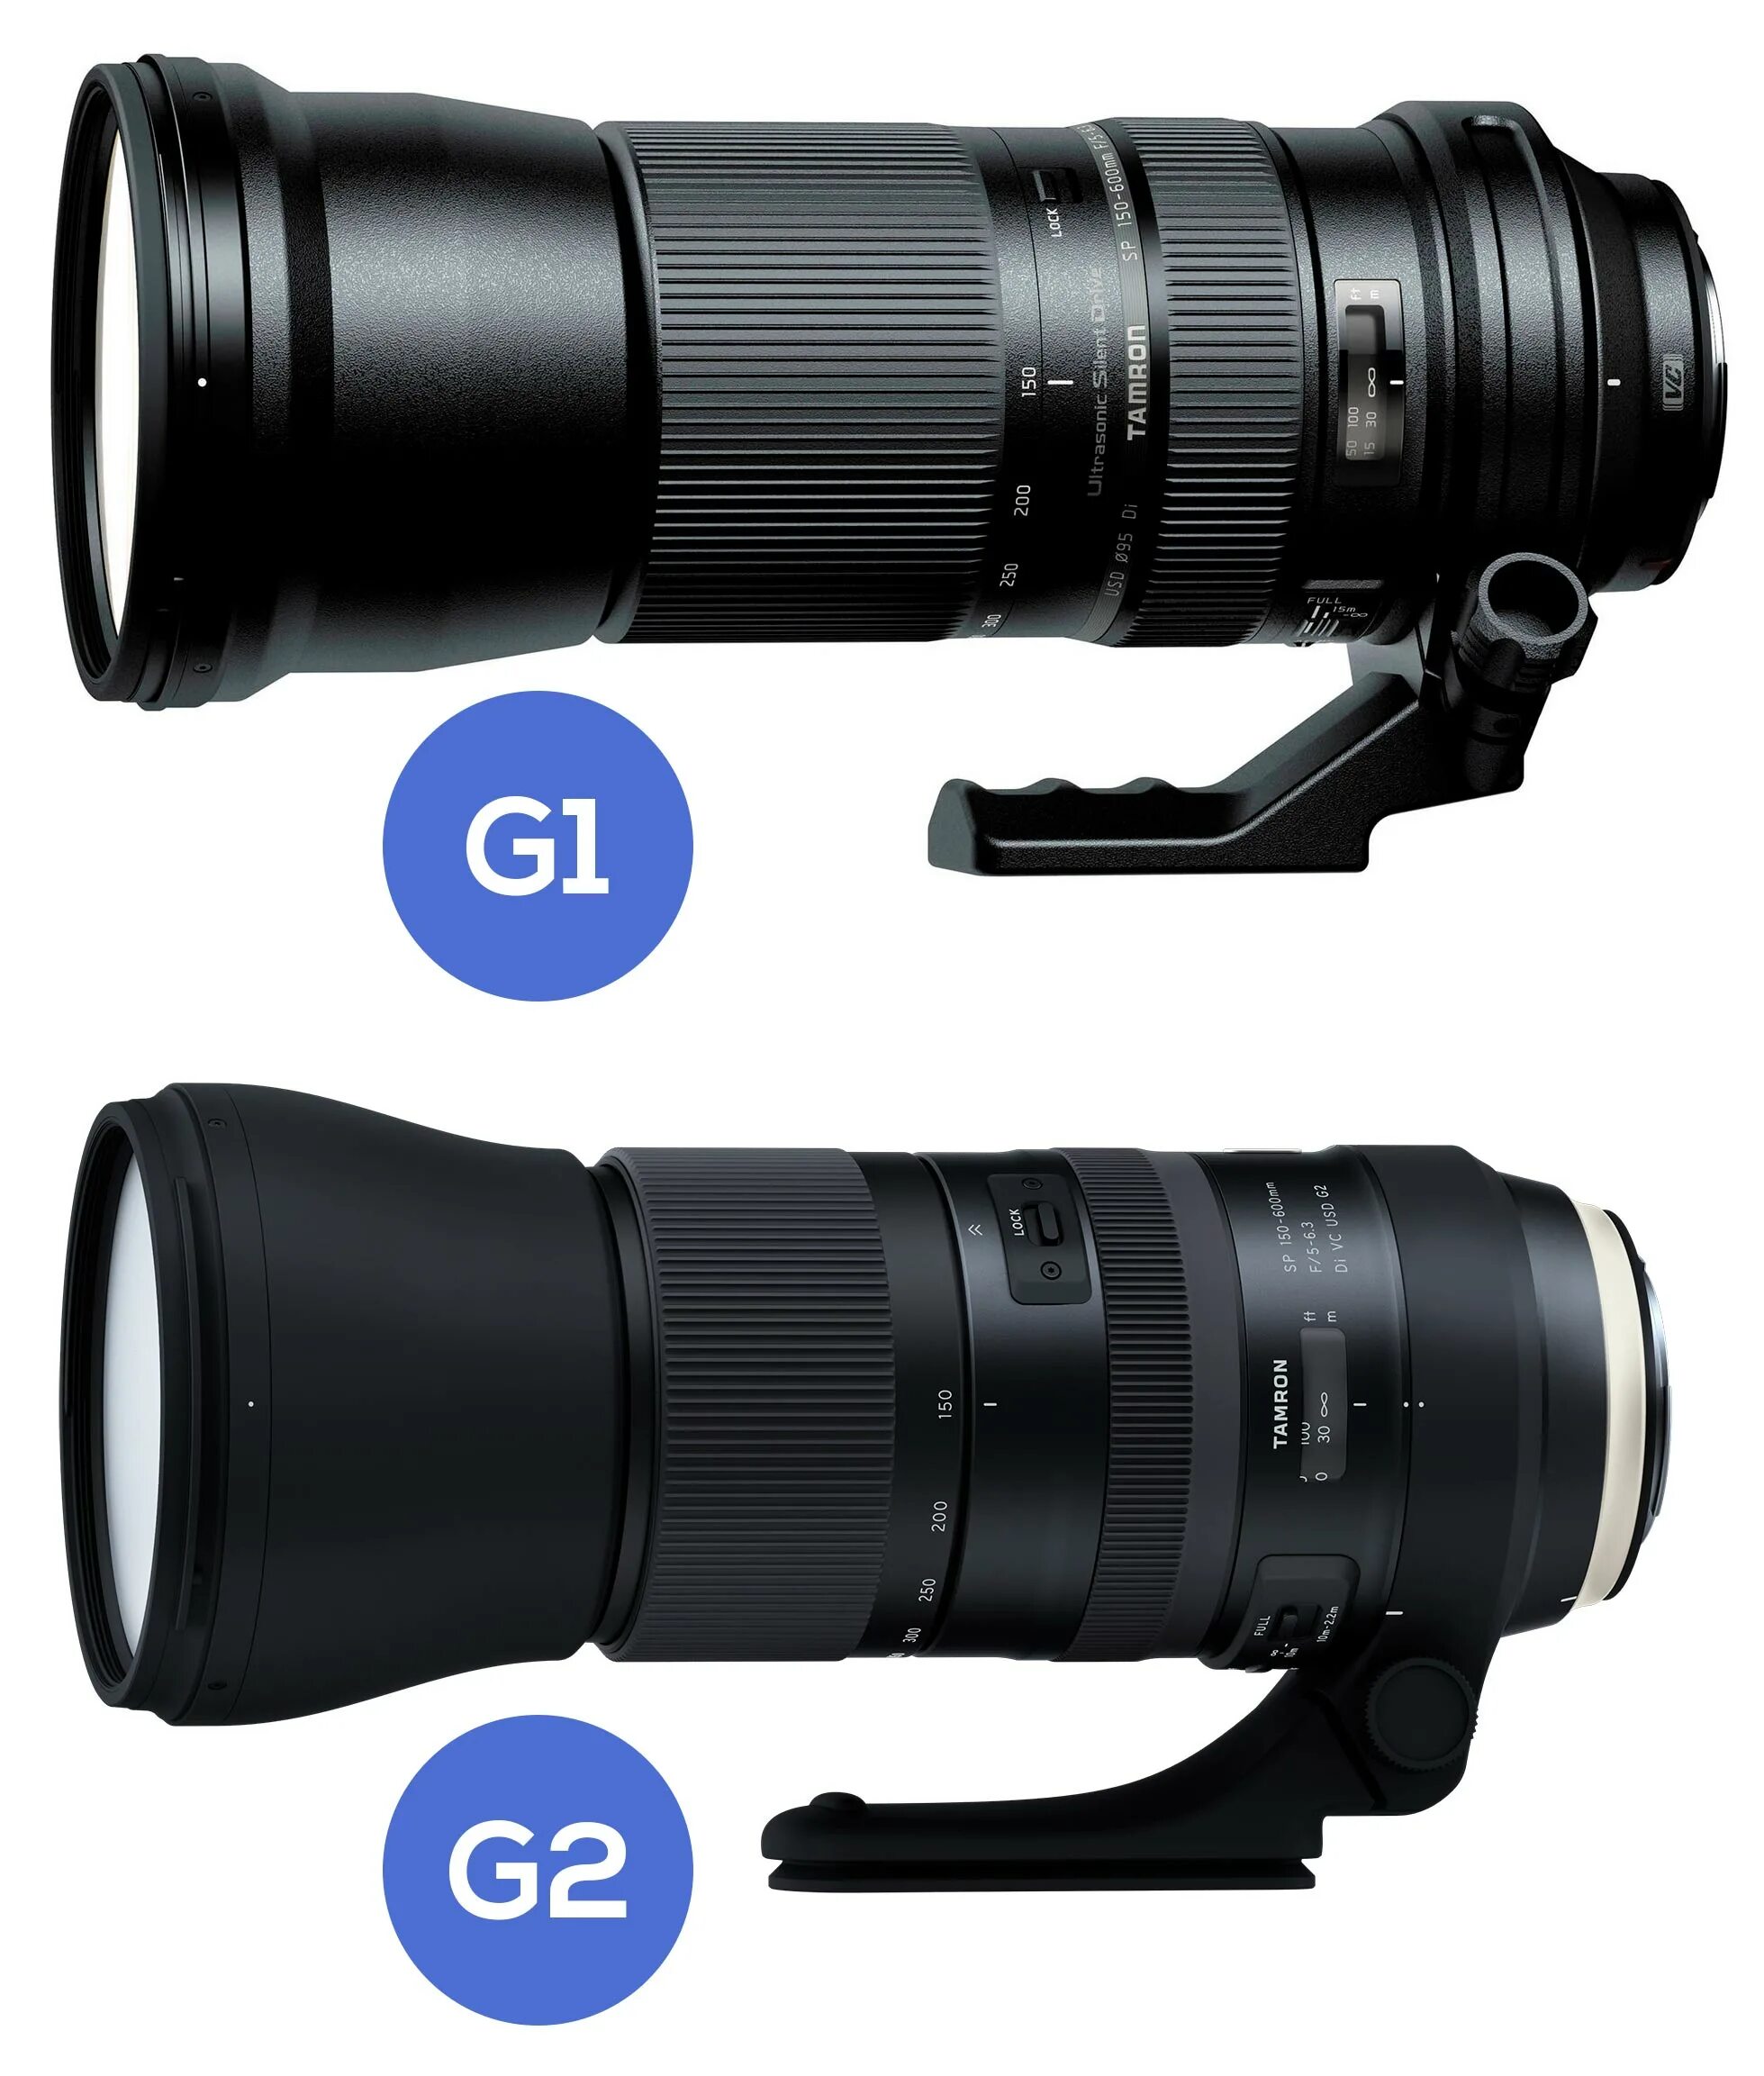 Tamron 150-600 g2 Canon. Tamron 150-600 Nikon. Tamron 150-600mm. Tamron 150-600mm g2. Sigma 150 600